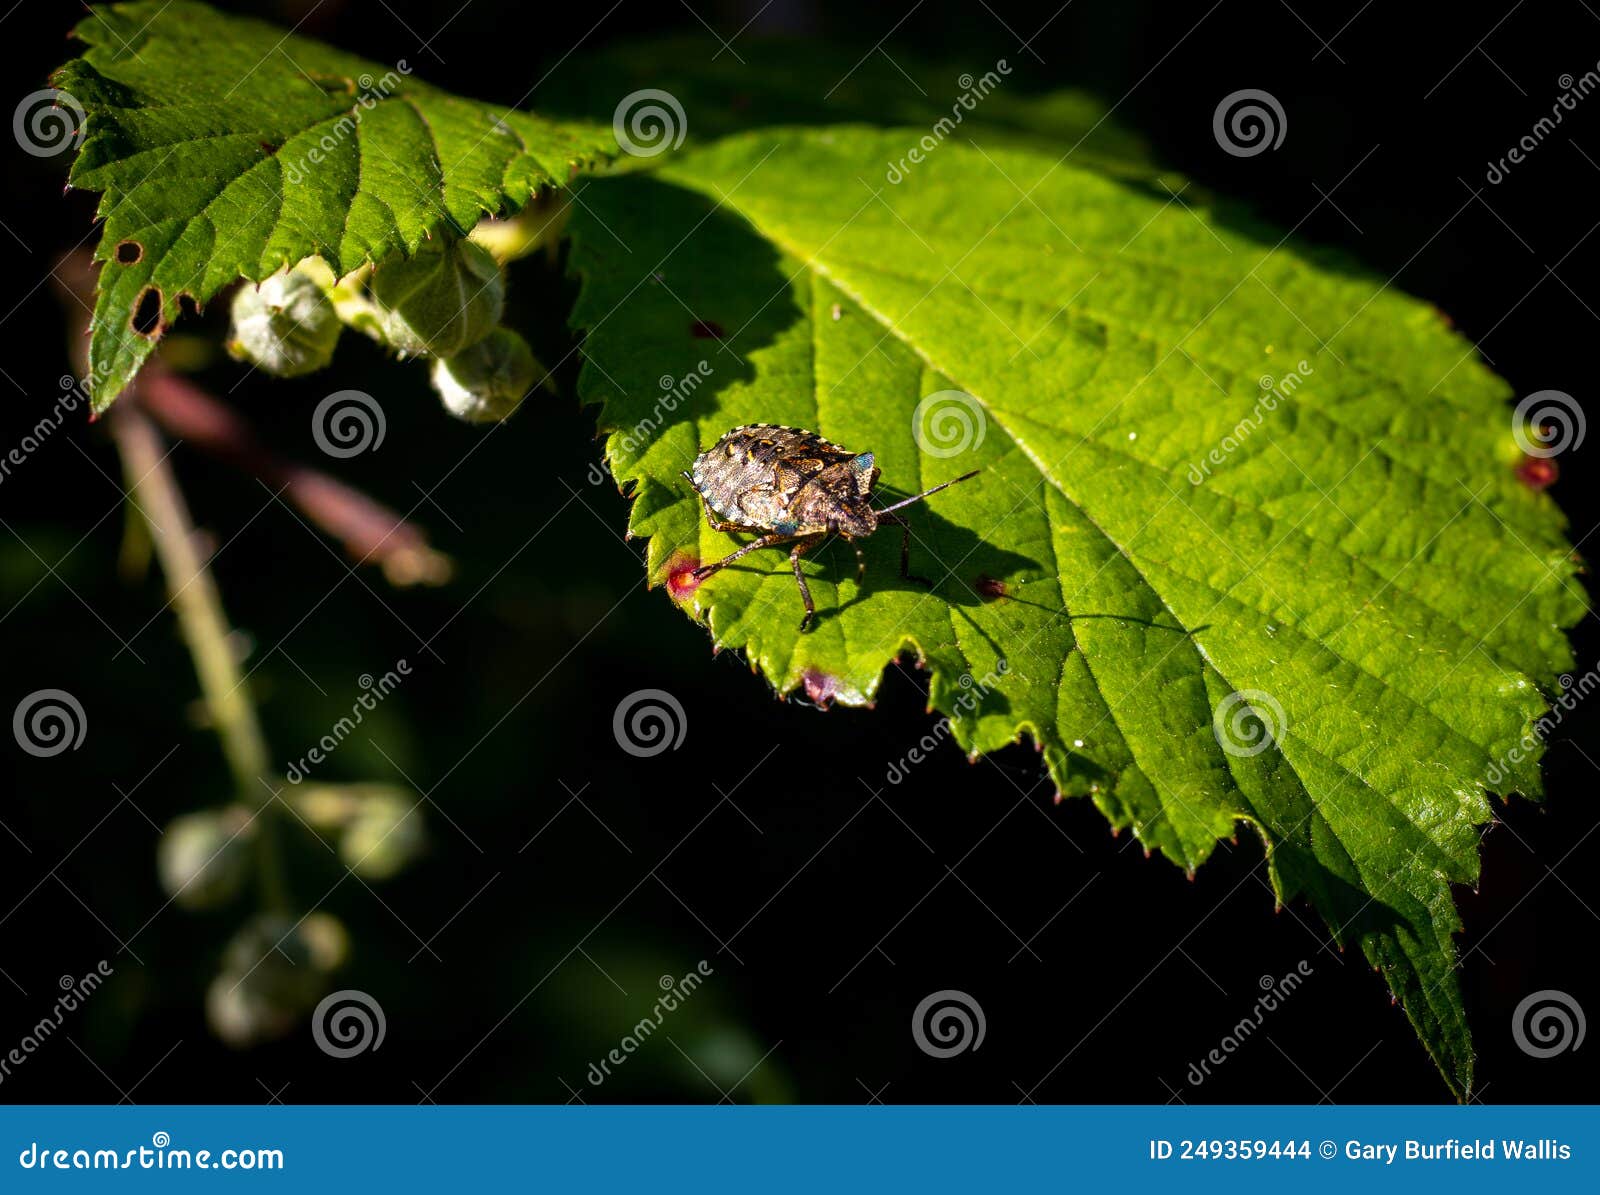 shieldbug on a leaf